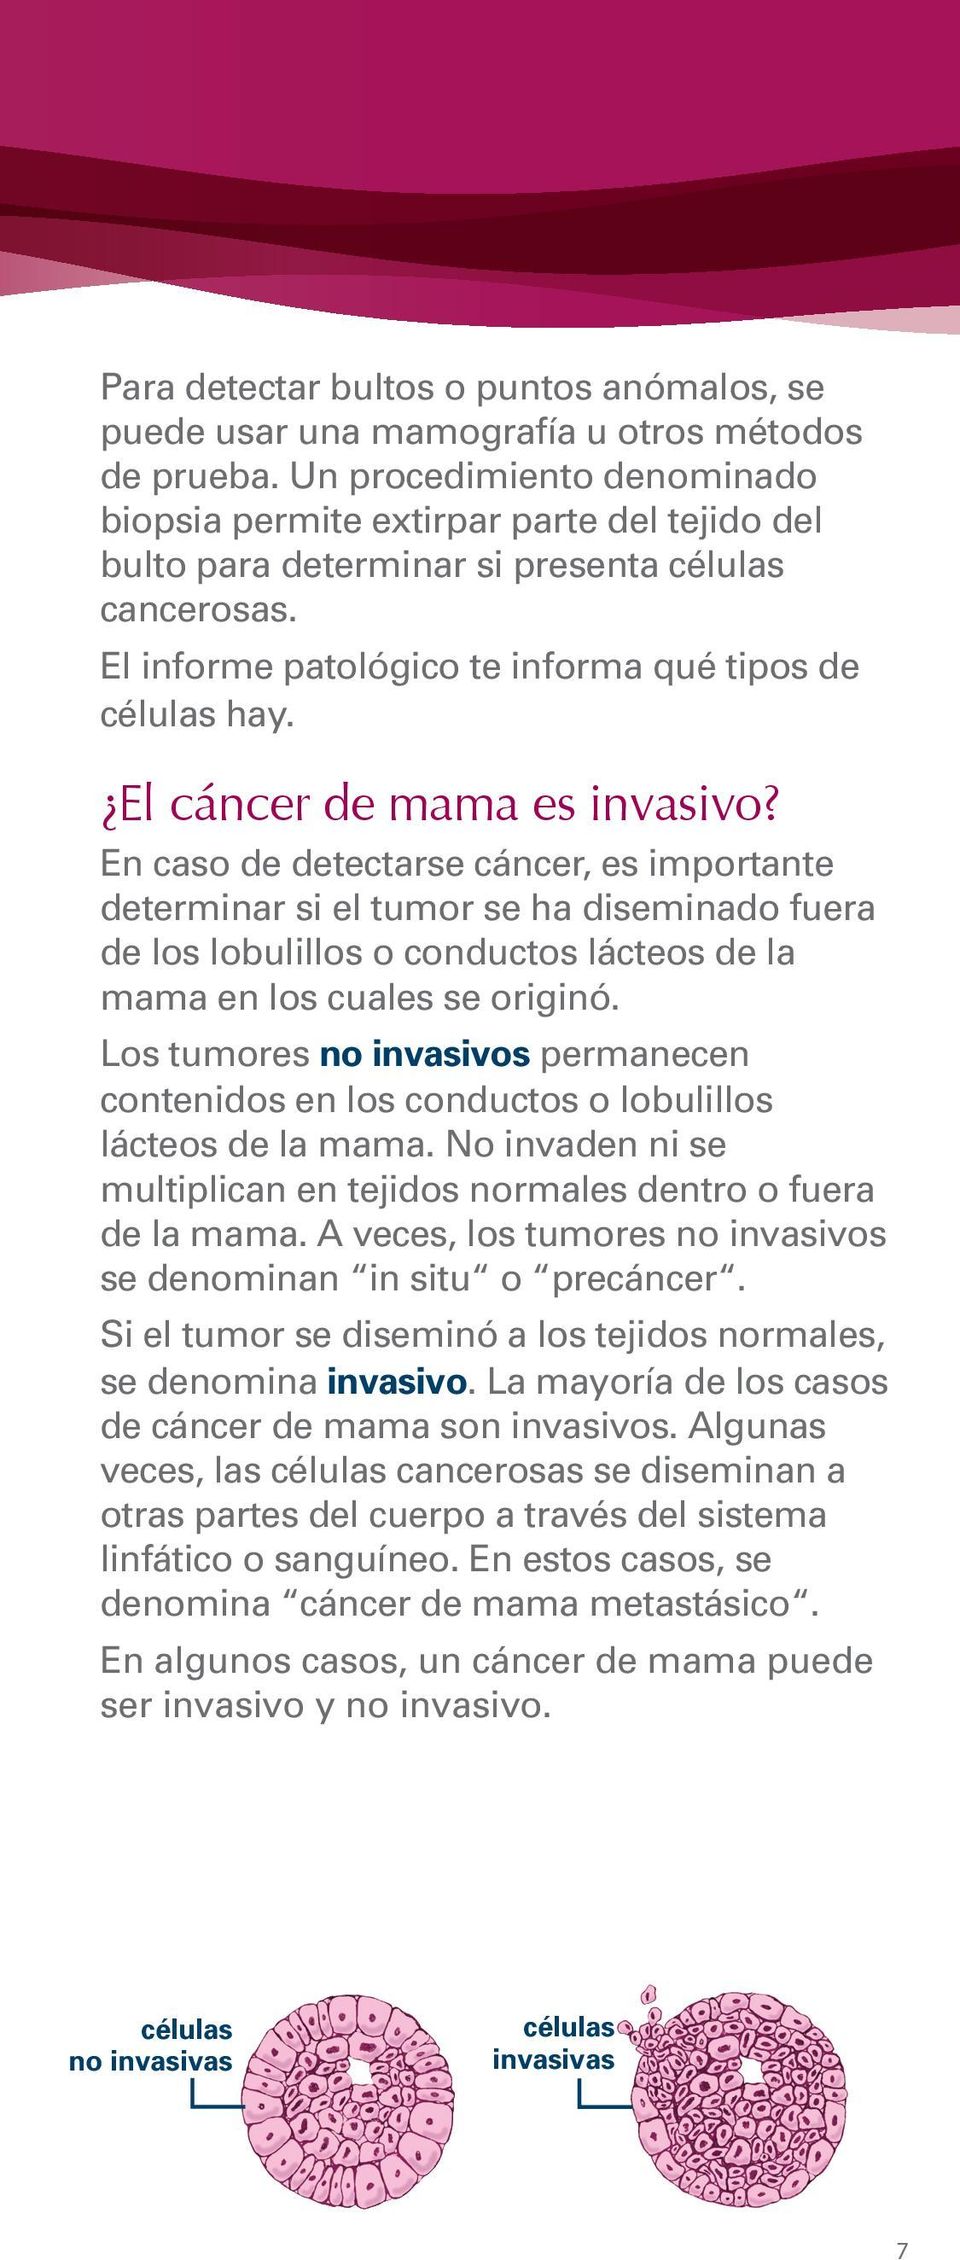 El cáncer de mama es invasivo? En caso de detectarse cáncer, es importante determinar si el tumor se ha diseminado fuera de los lobulillos o conductos lácteos de la mama en los cuales se originó.